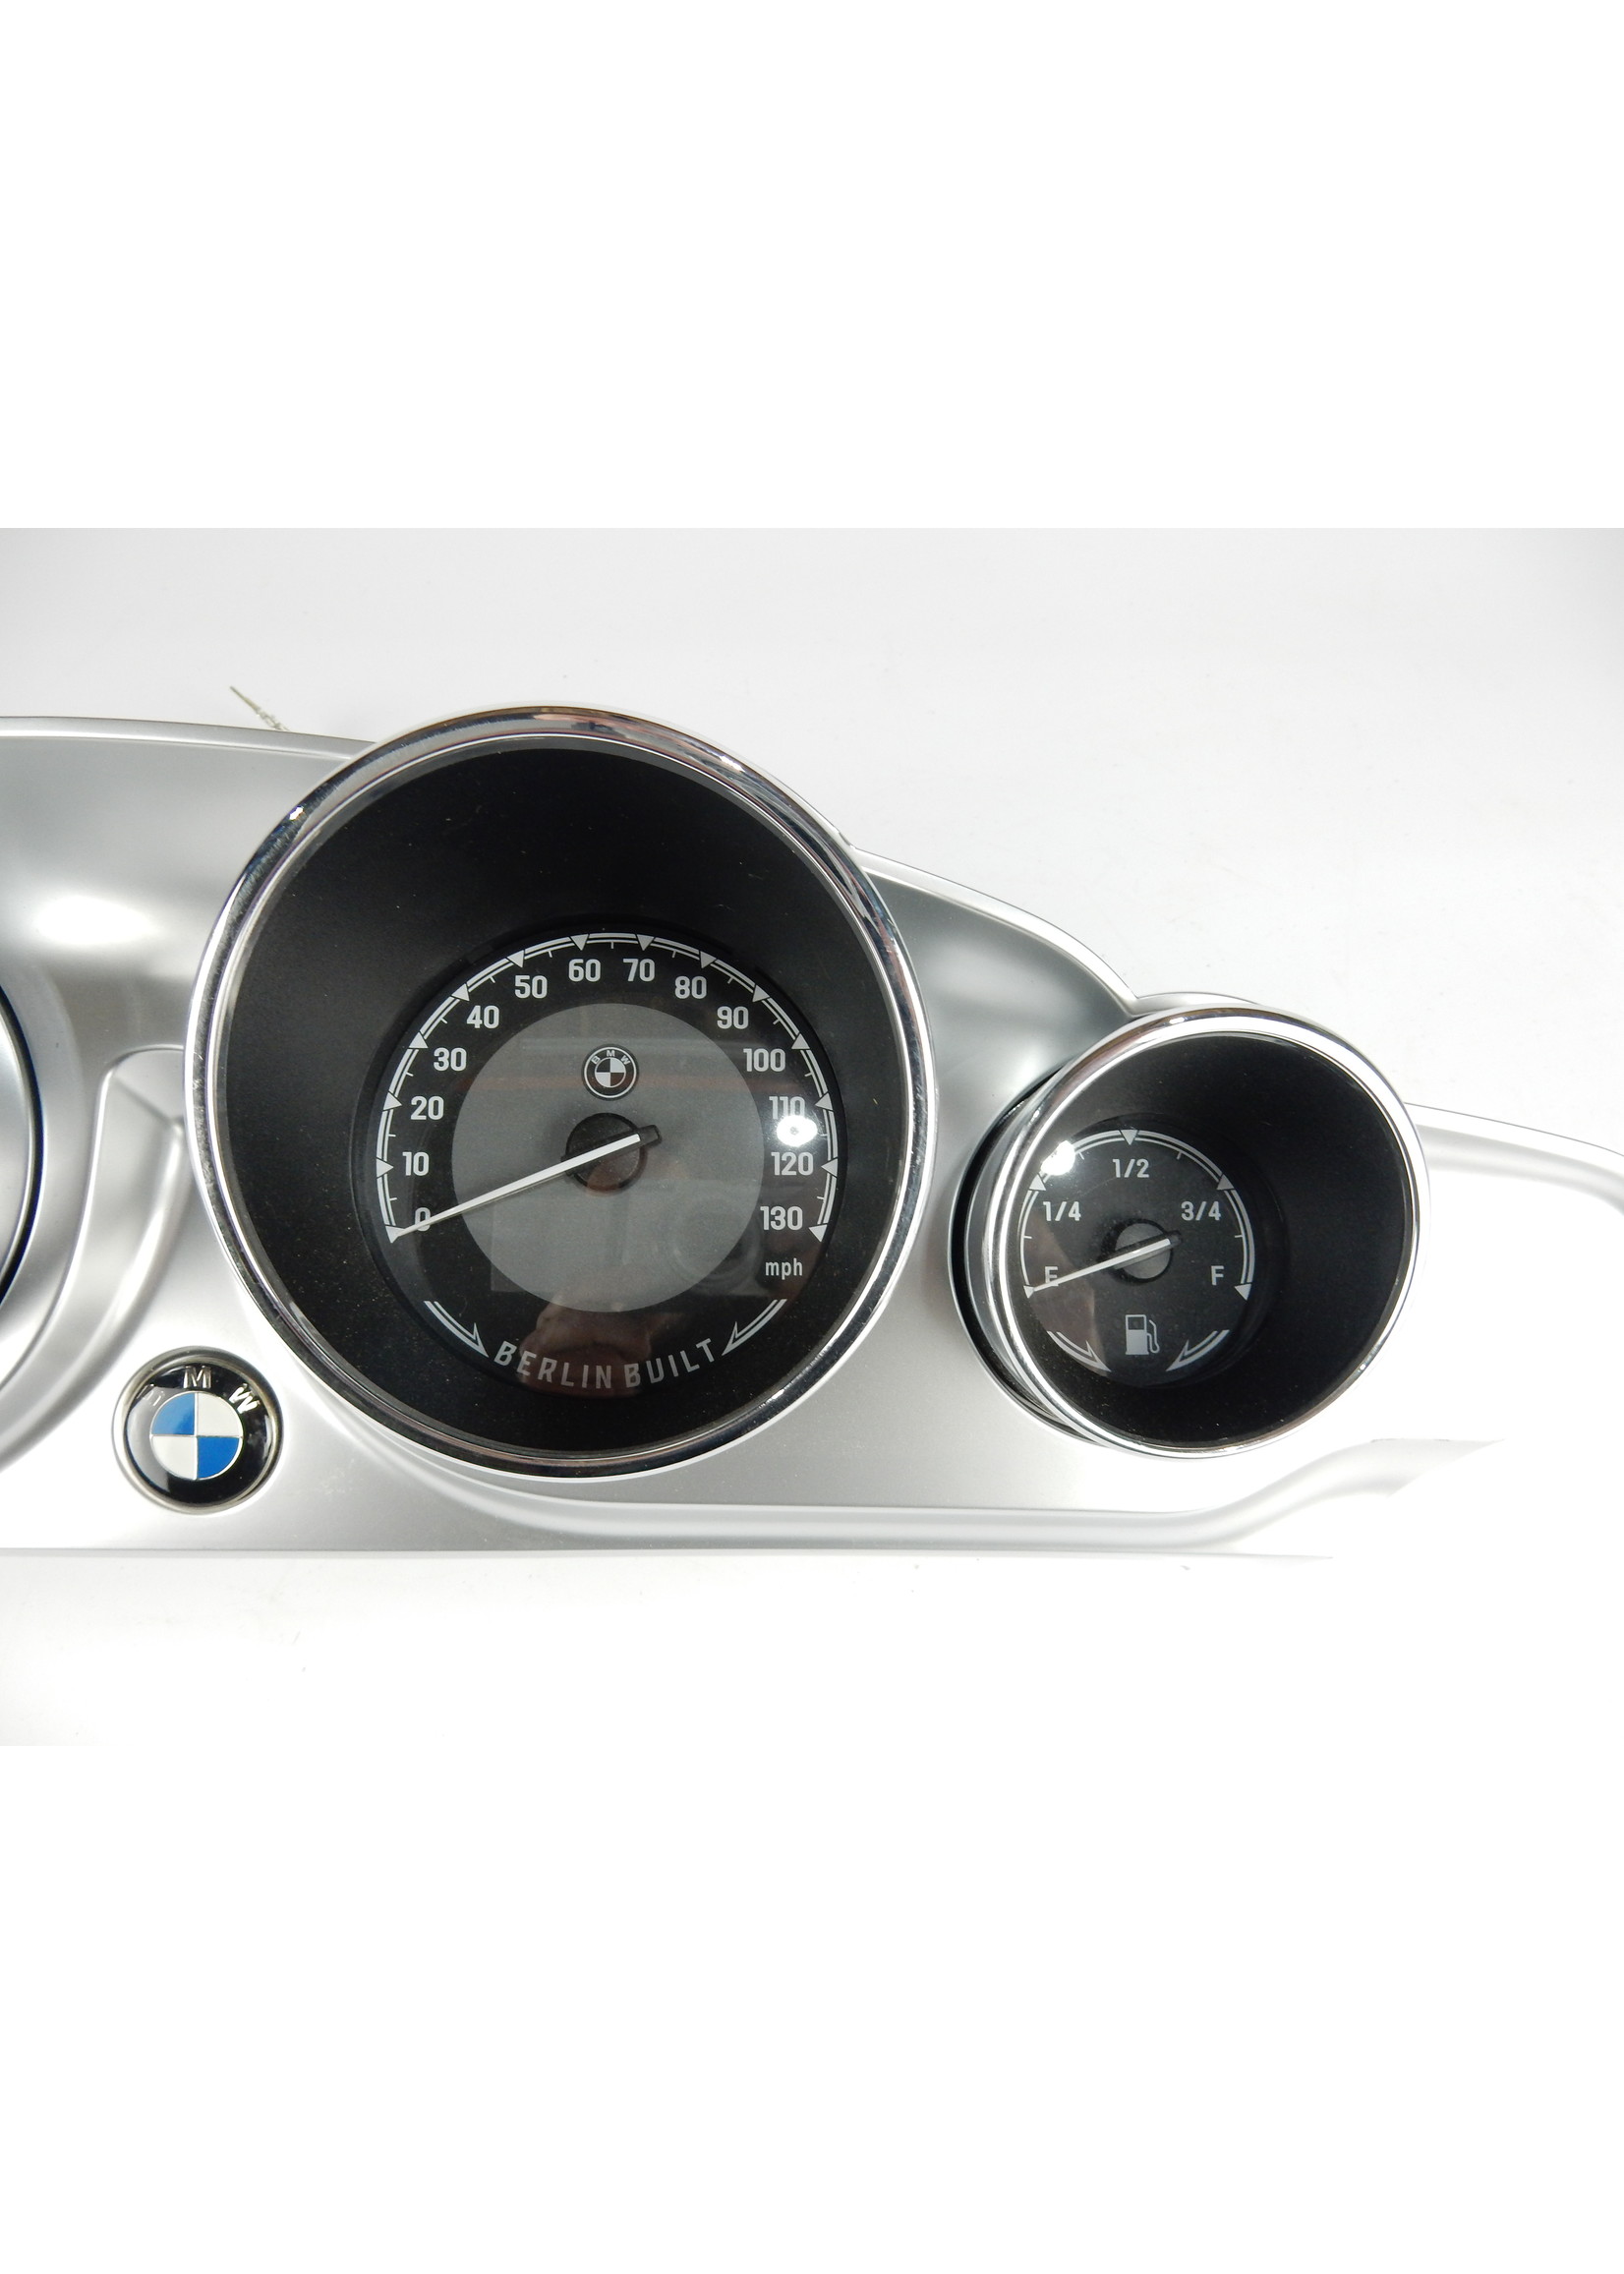 BMW BMW R18 B Transcontinental US Instrumententafel CHROME / Drehzahlmesser / Kraftstoff-Füllstandsanzeige / Power-Reserve-Anzeige / 46639829082 / 62119480498 / 62119480499 / 62119480500